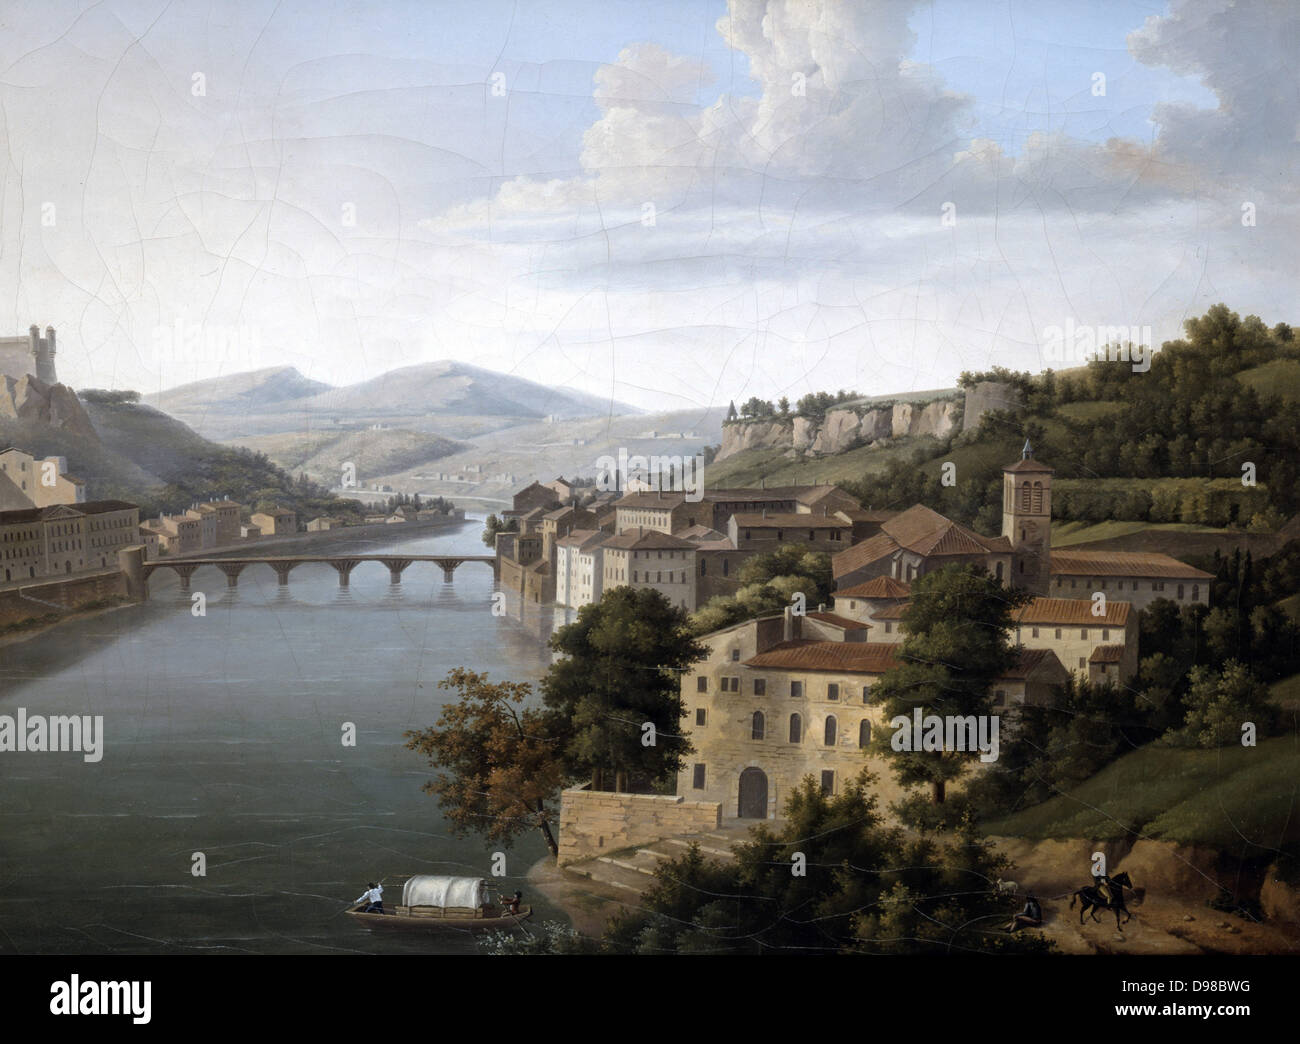 Blick auf die Rhone': Flusslandschaft mit Brücke zwischen den Gebäuden zu beiden Ufern des Wassers. Alexandrine Hyacinthe Dunouy (1757-1841), französischer Maler. Öl auf Leinwand. Stockfoto